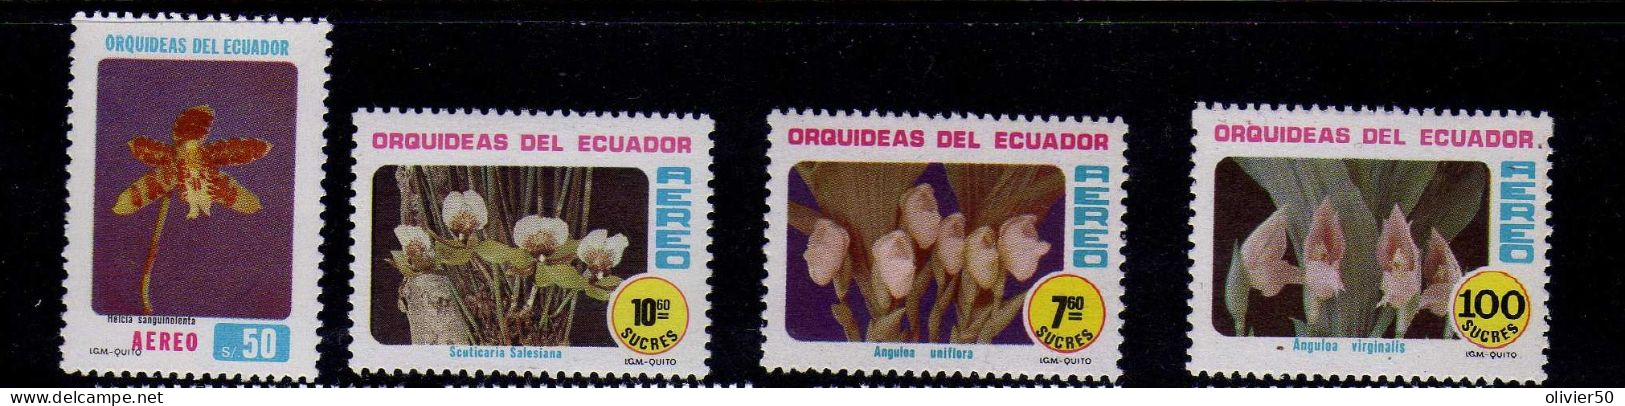 Equateur - 1980 - P A - Flore - Orchidees - Neufs** - MNH - Equateur